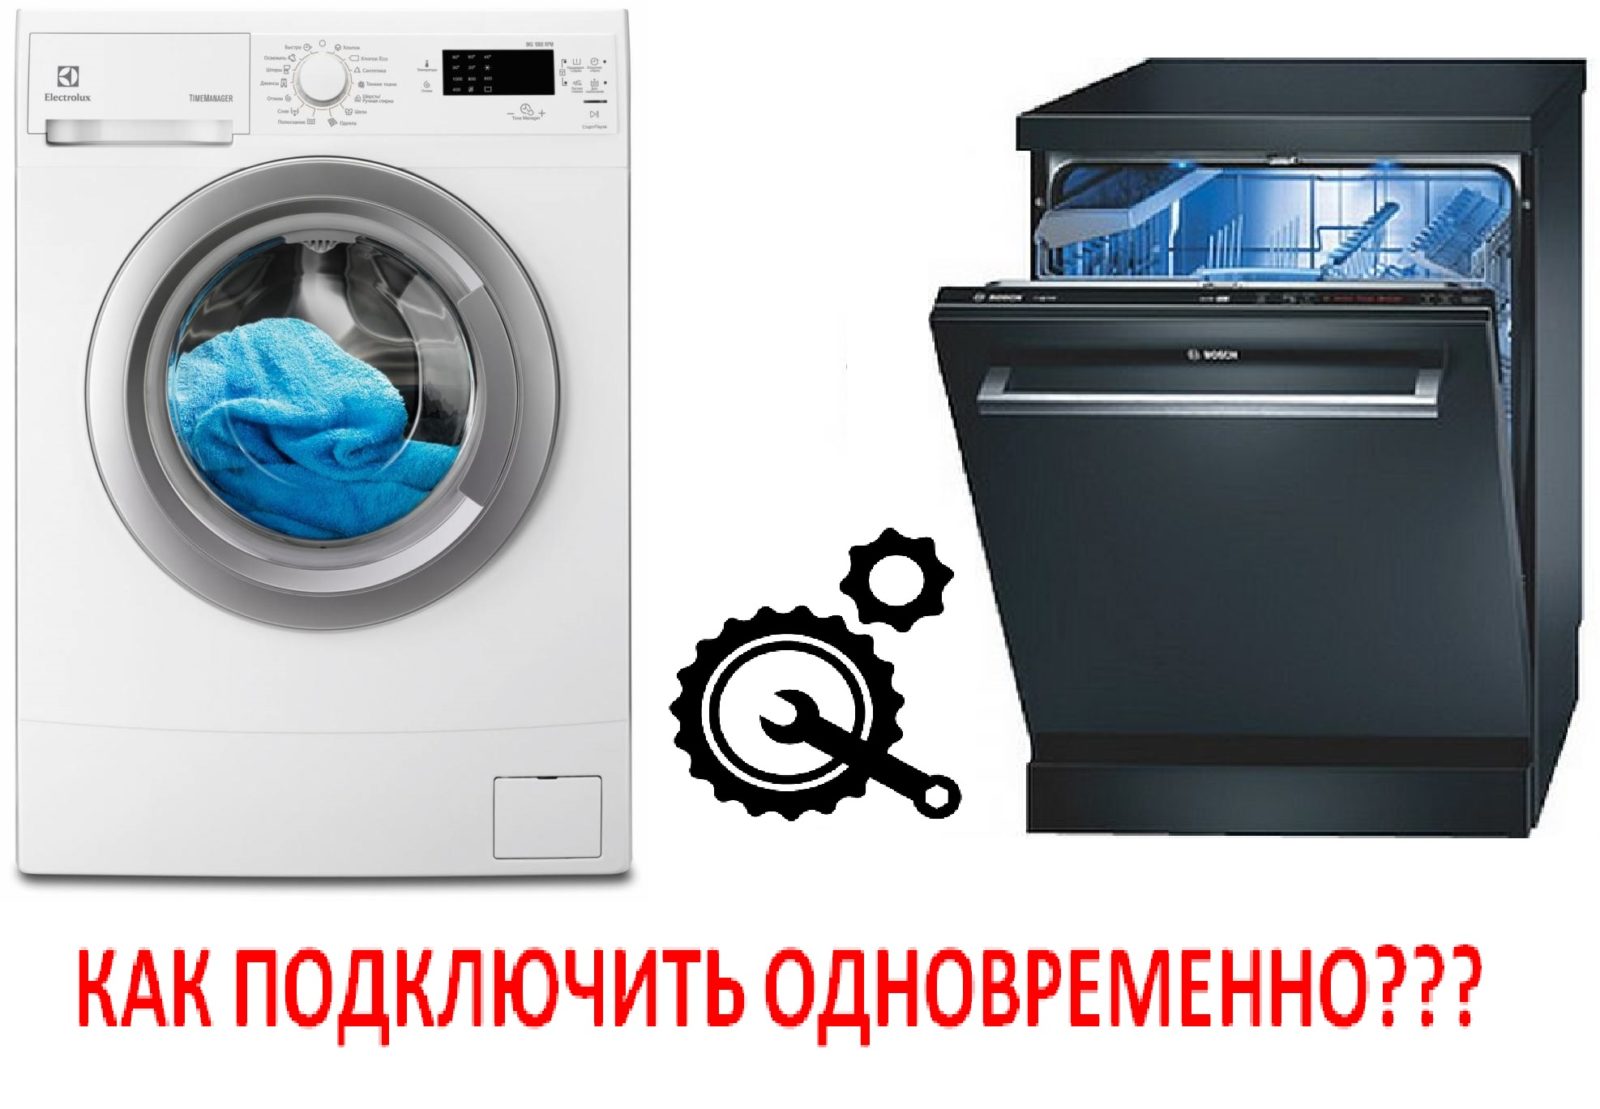 koppling av tvättmaskin och diskmaskin